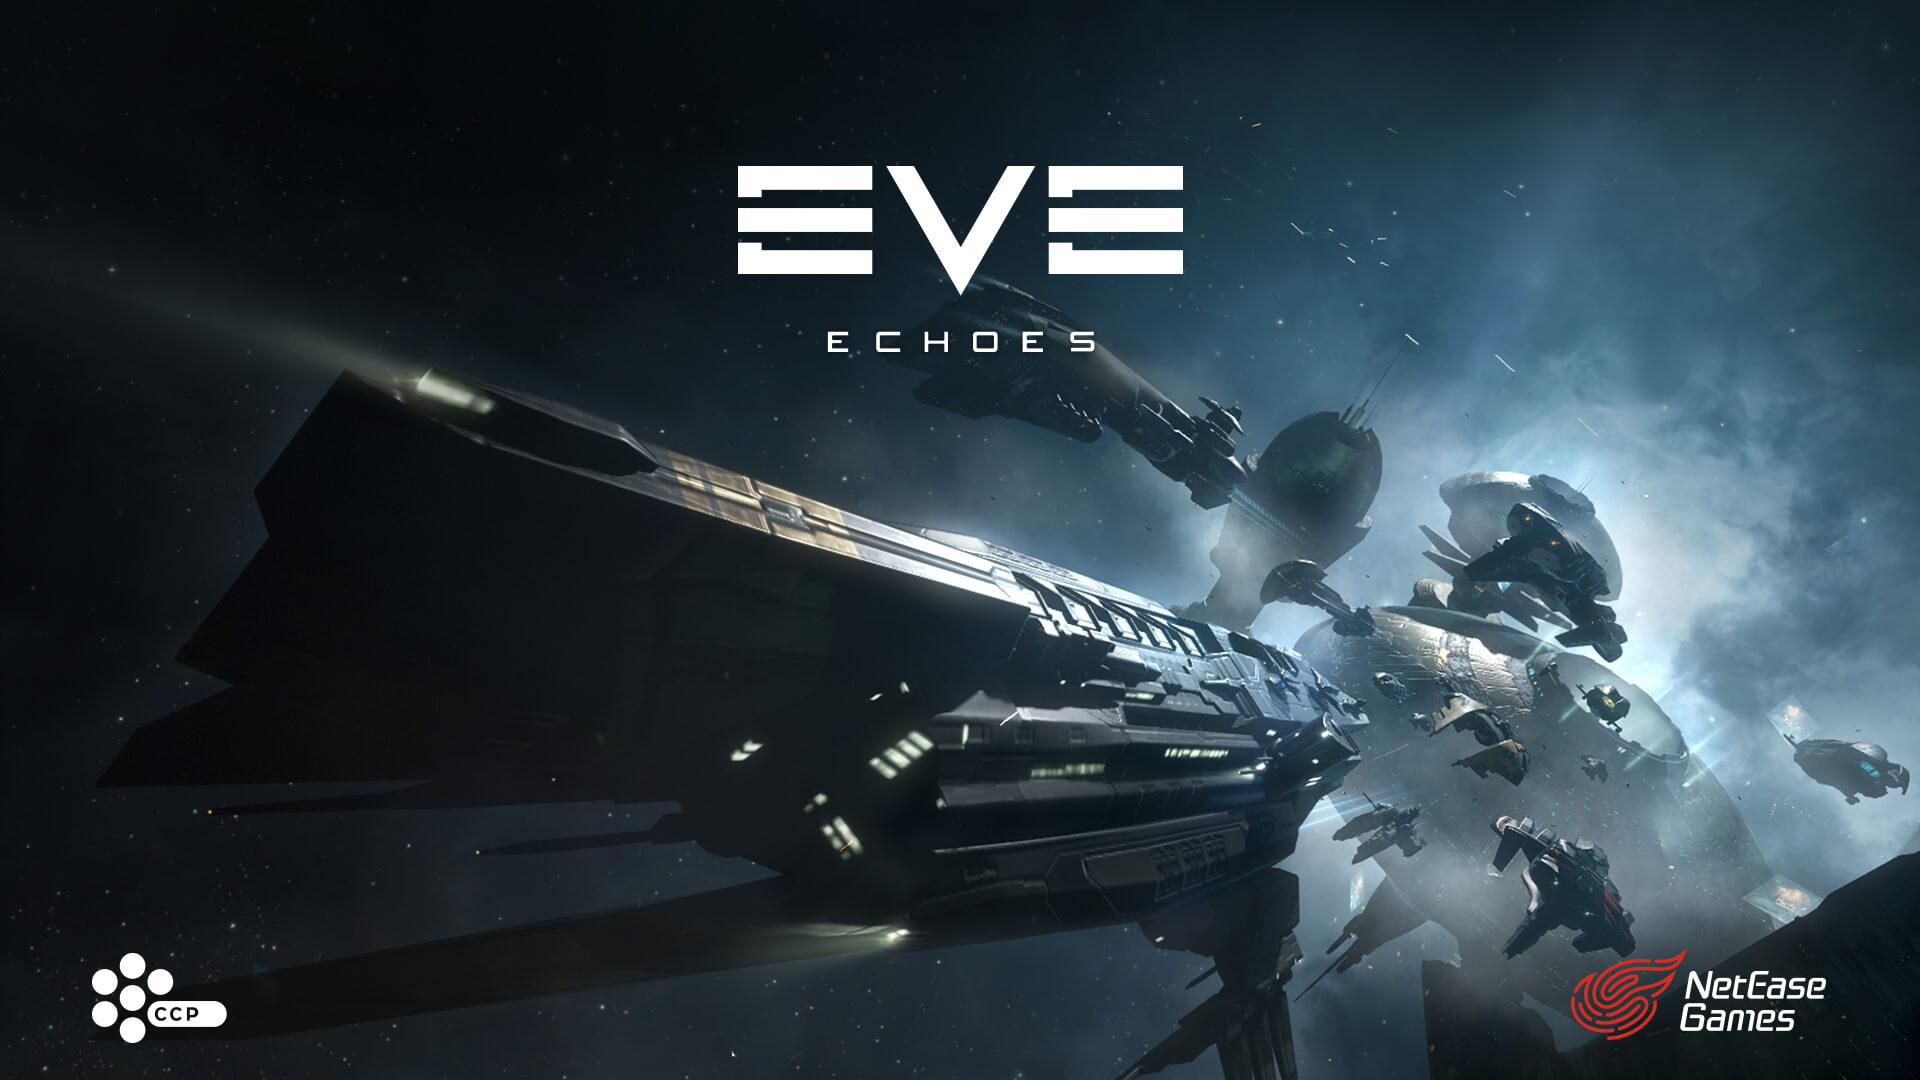 Na Androida i iOS została wydana EVE Echoes - kosmiczna MMO z otwartym światem według uniwersum EVE Online